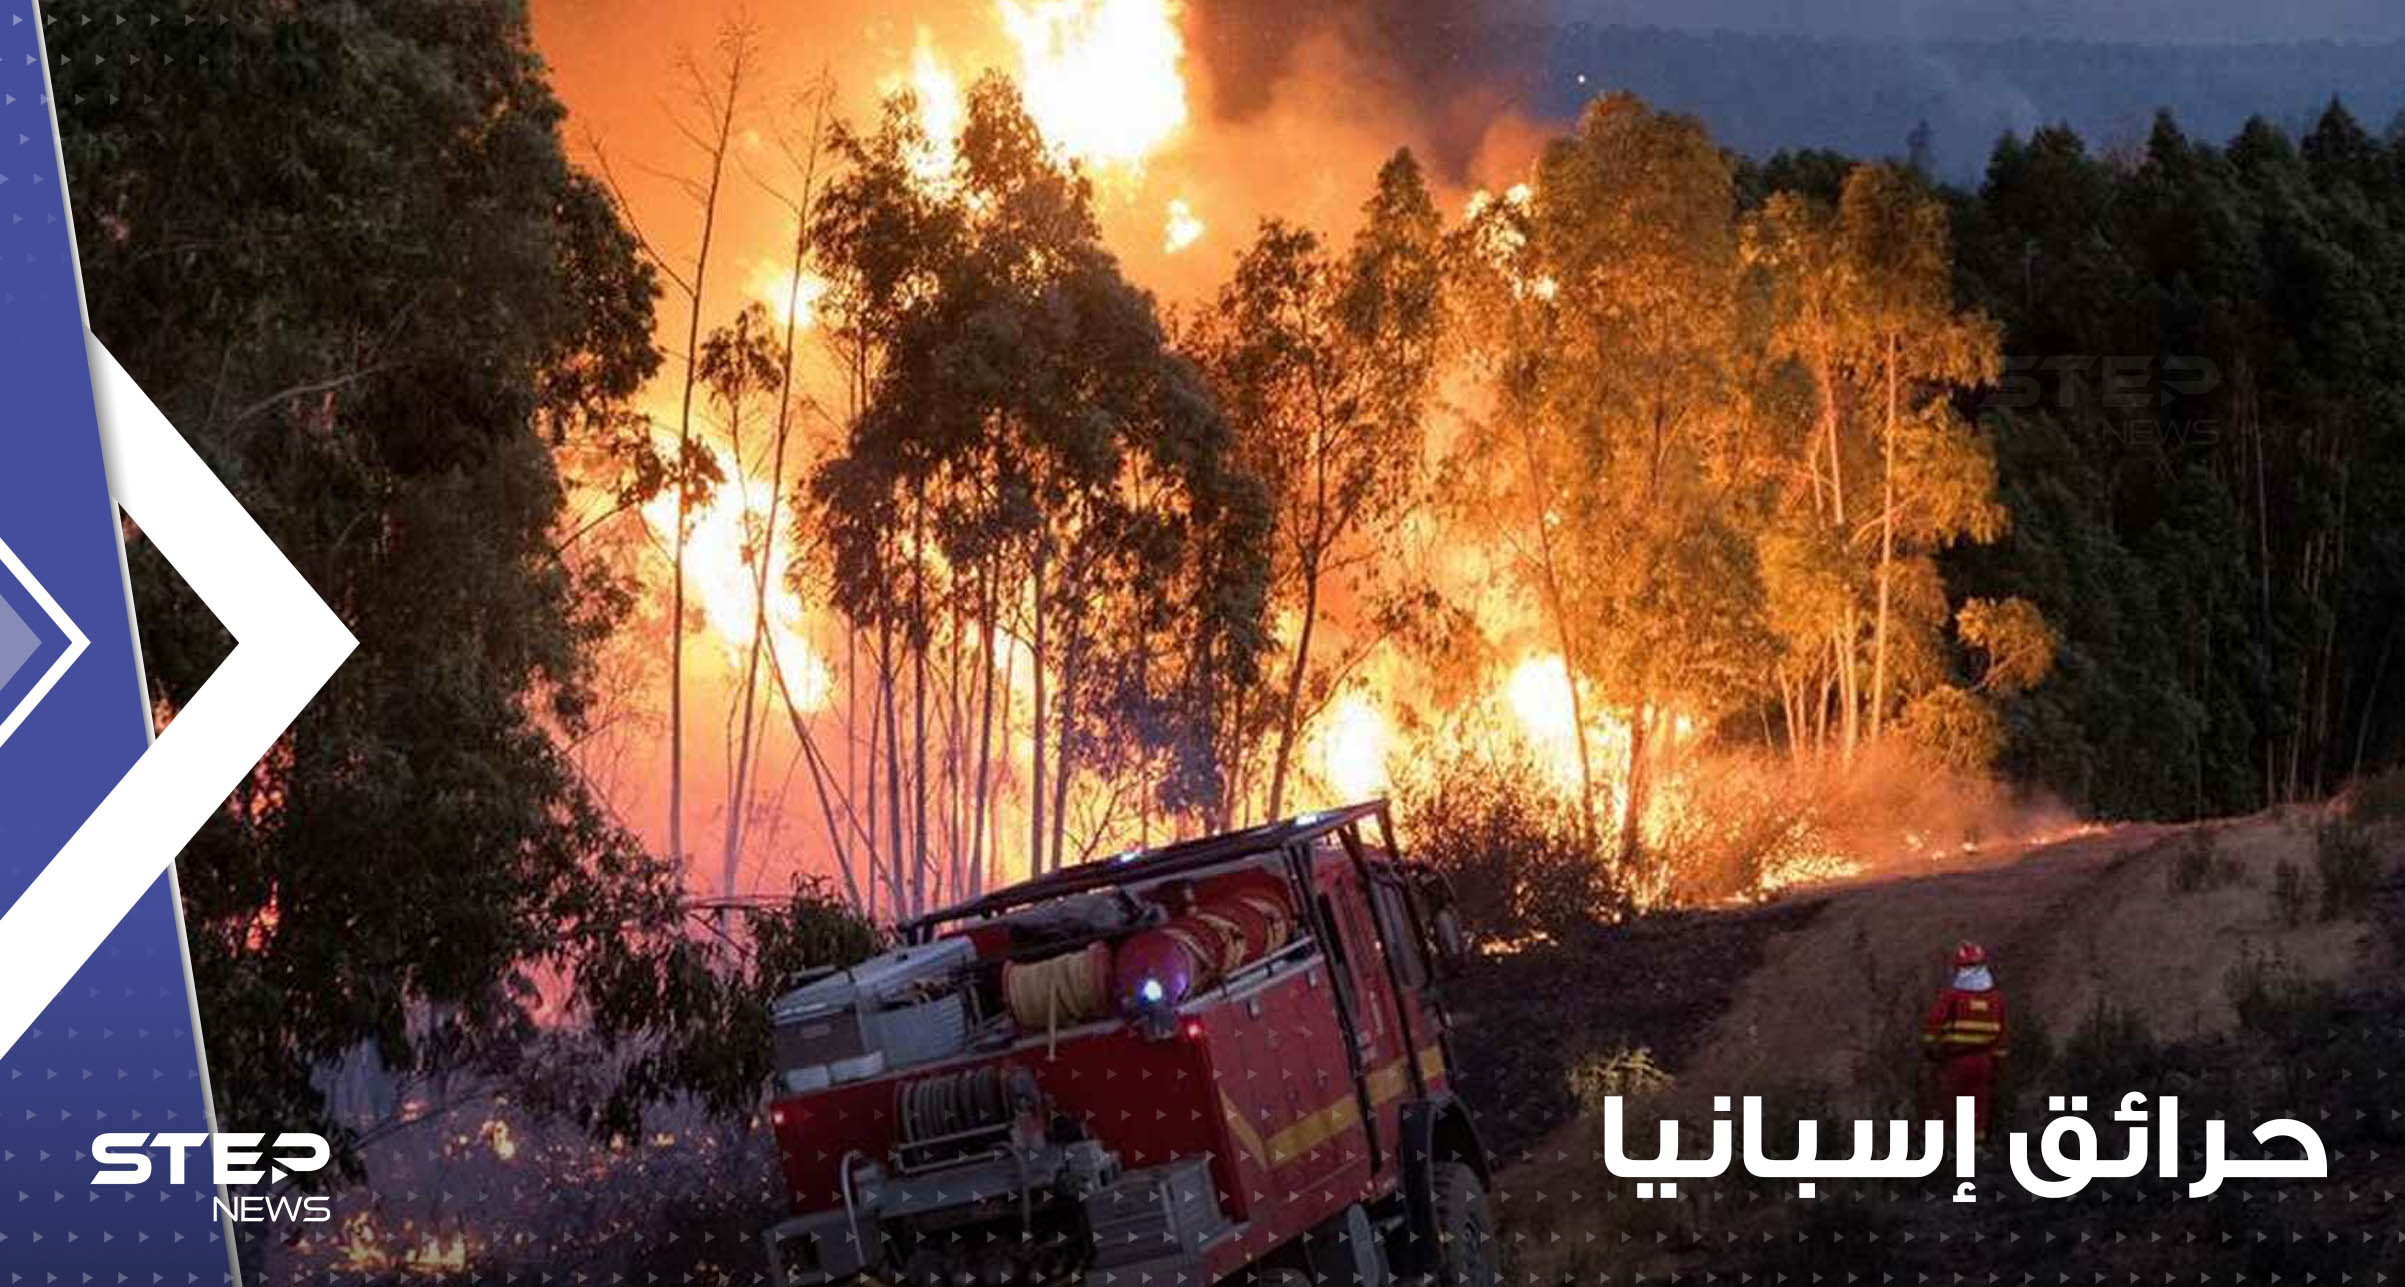 حرائق غابات إسبانيا تصل لنقطة حرجة وفيديوهات توثق حجم الكارثة